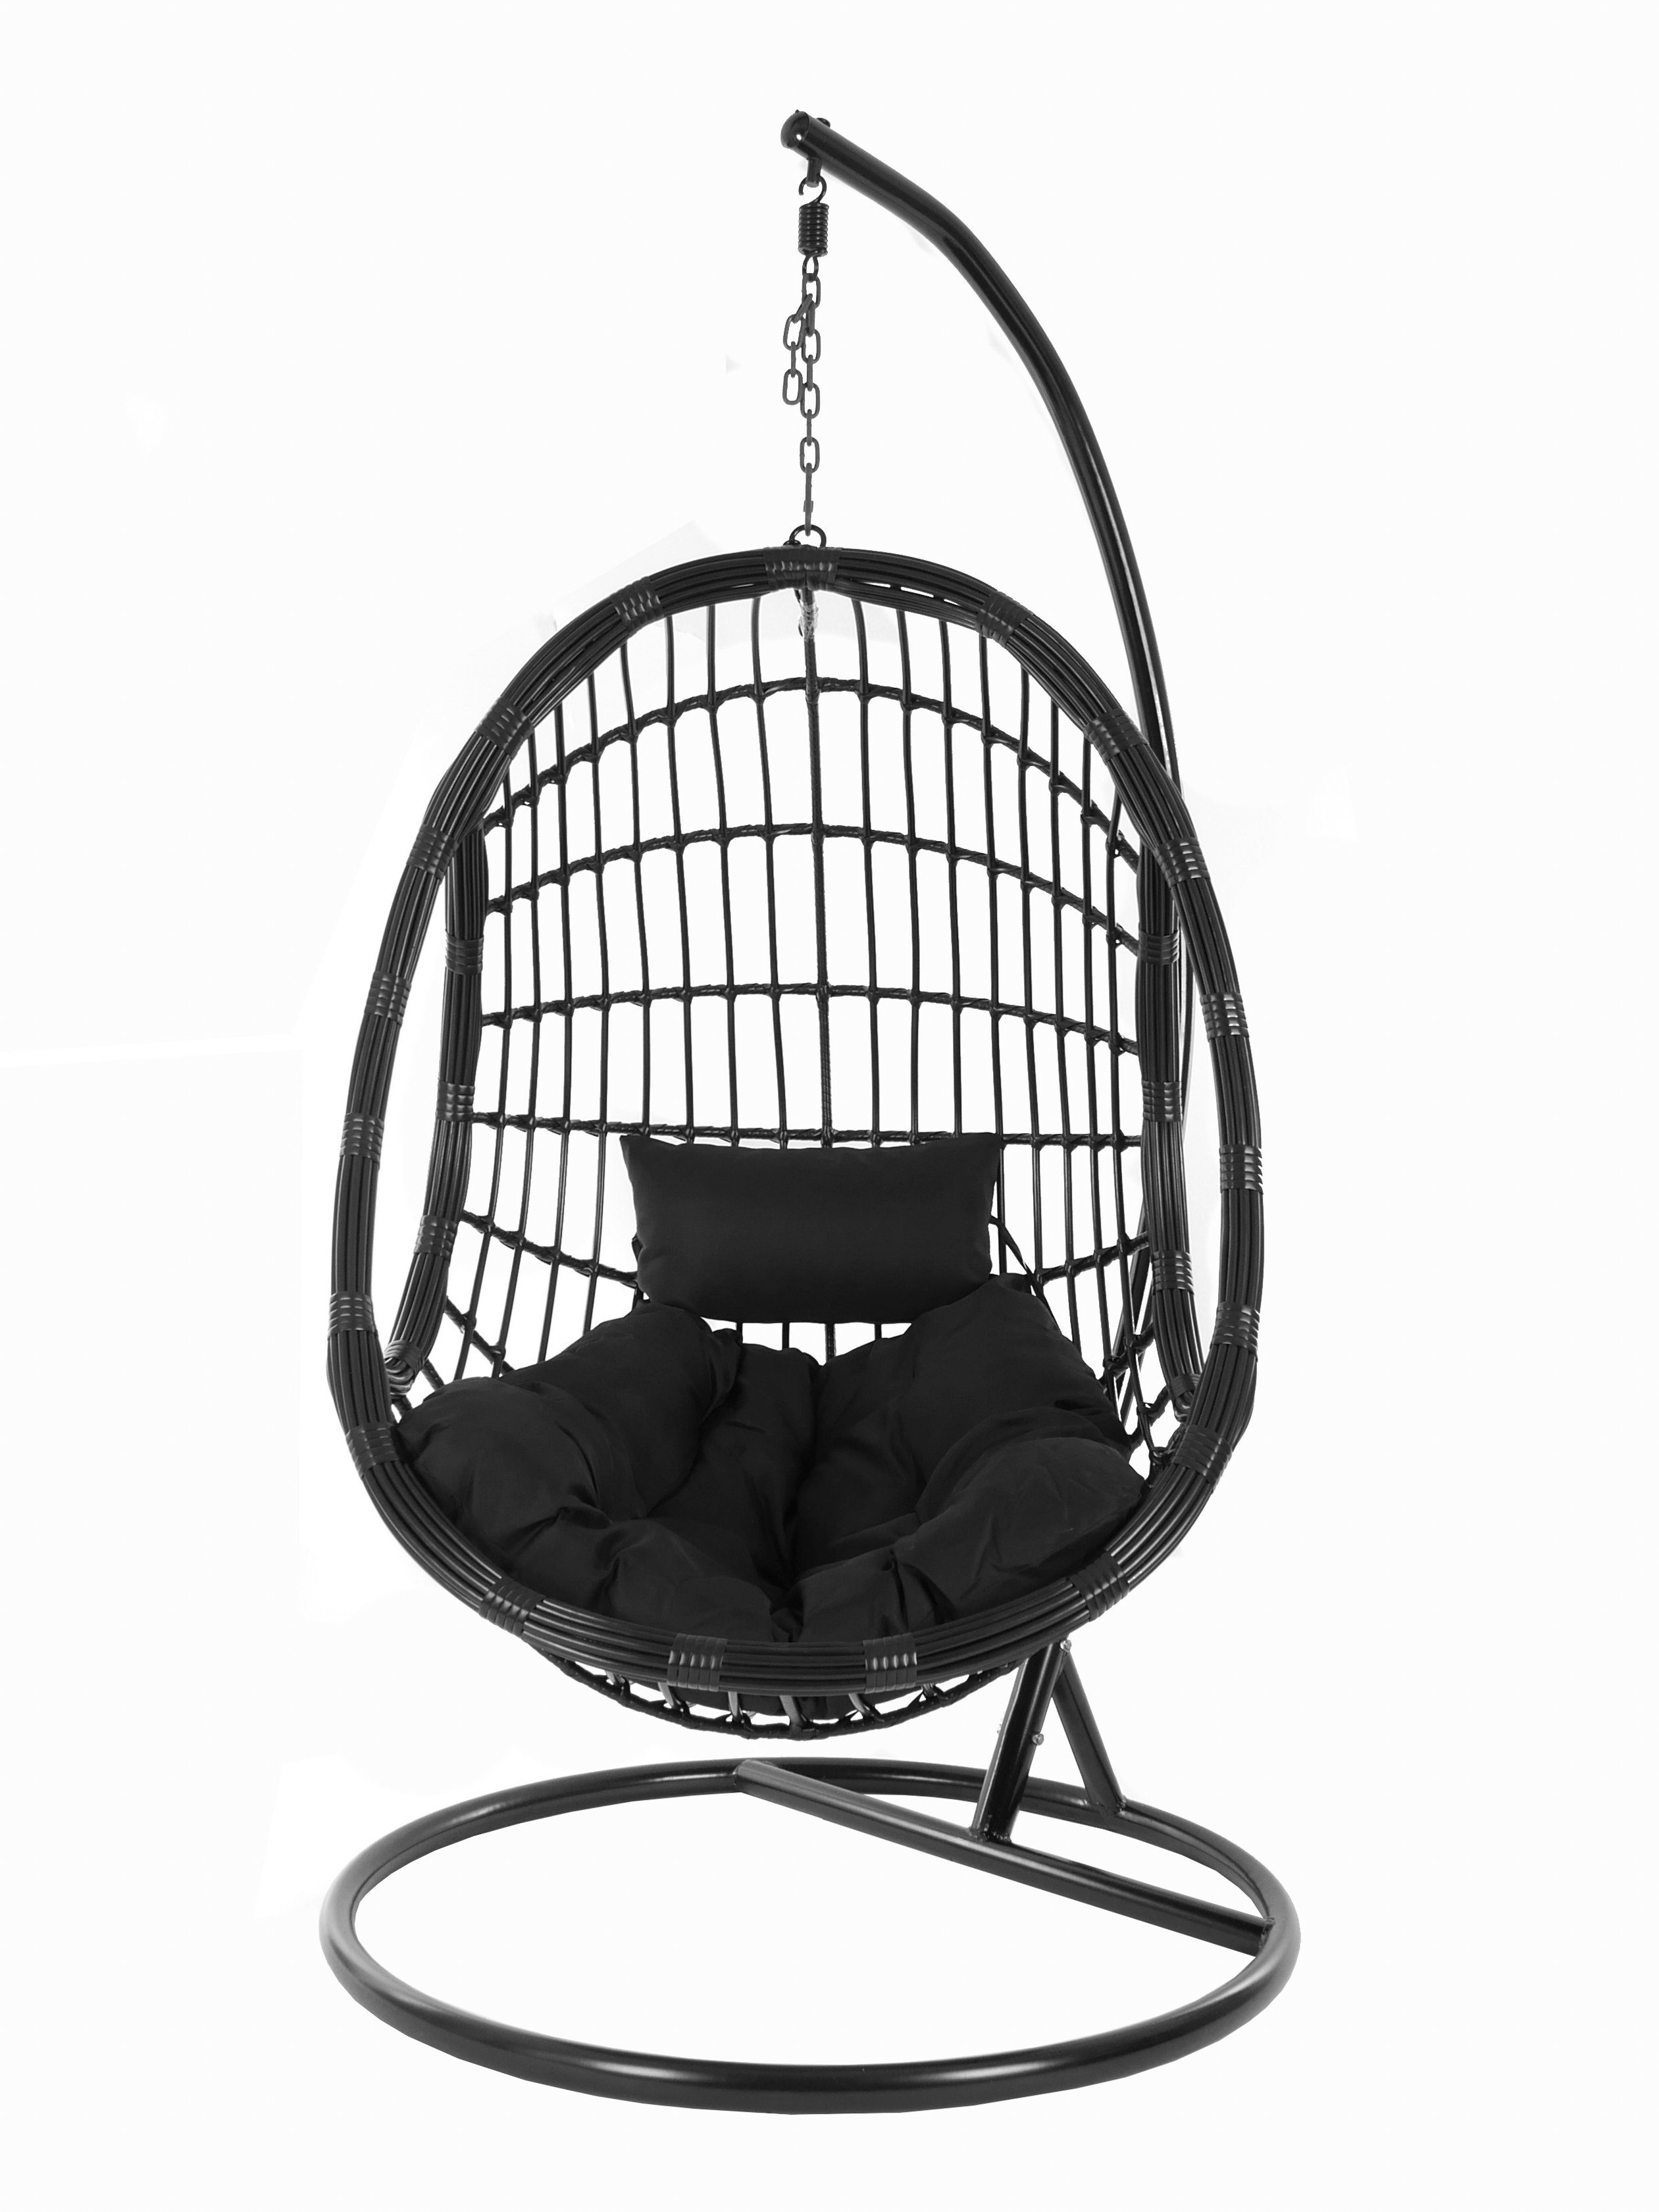 mit schwarz, Gestell Chair, Hängesessel black) Design PALMANOVA schwarz Kissen, Loungemöbel, Hängesessel KIDEO Swing (9999 und black, Schwebesessel, edles